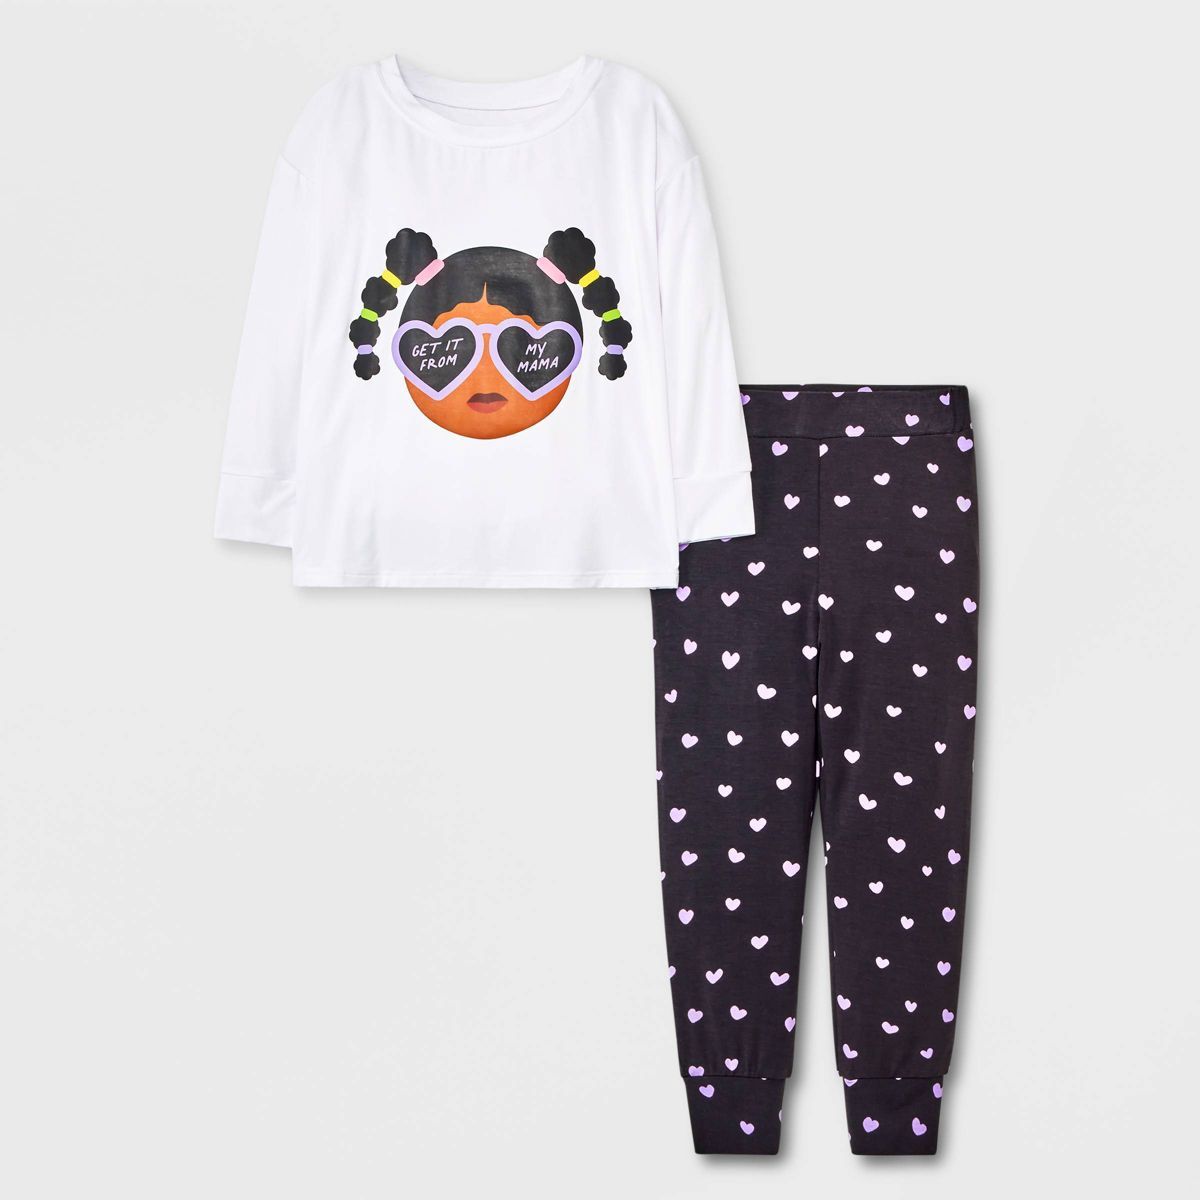 Elle Olivia Toddler Girls' 2pc Pig Tail Hearts Pajama Set - Black | Target